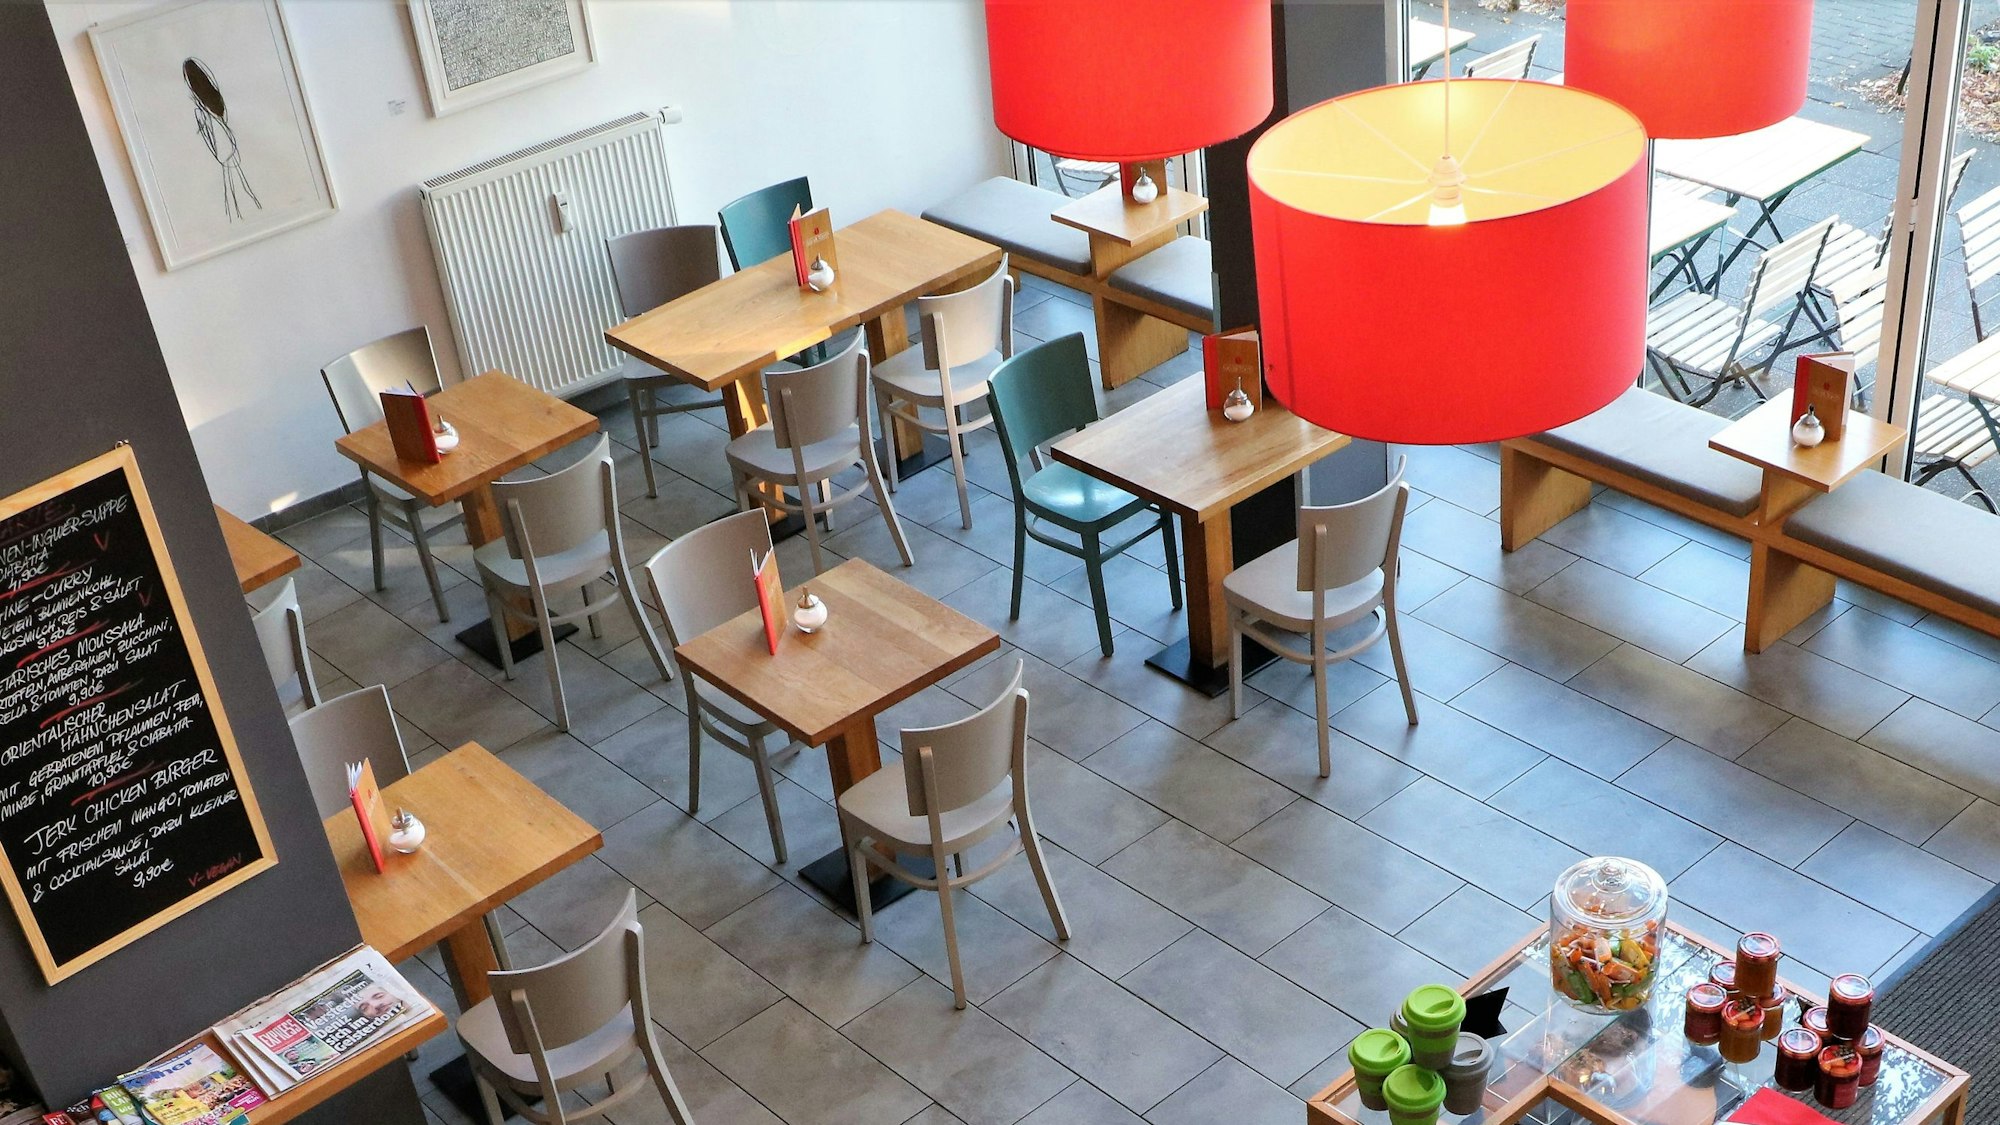 Das Café „Wo ist Tom?“: Aufgenommen aus dem zweiten Stock des Cafés, sind Tische und die Kuchentheke zu sehen. Es hängt eine auffällige rote Lampe herunter.